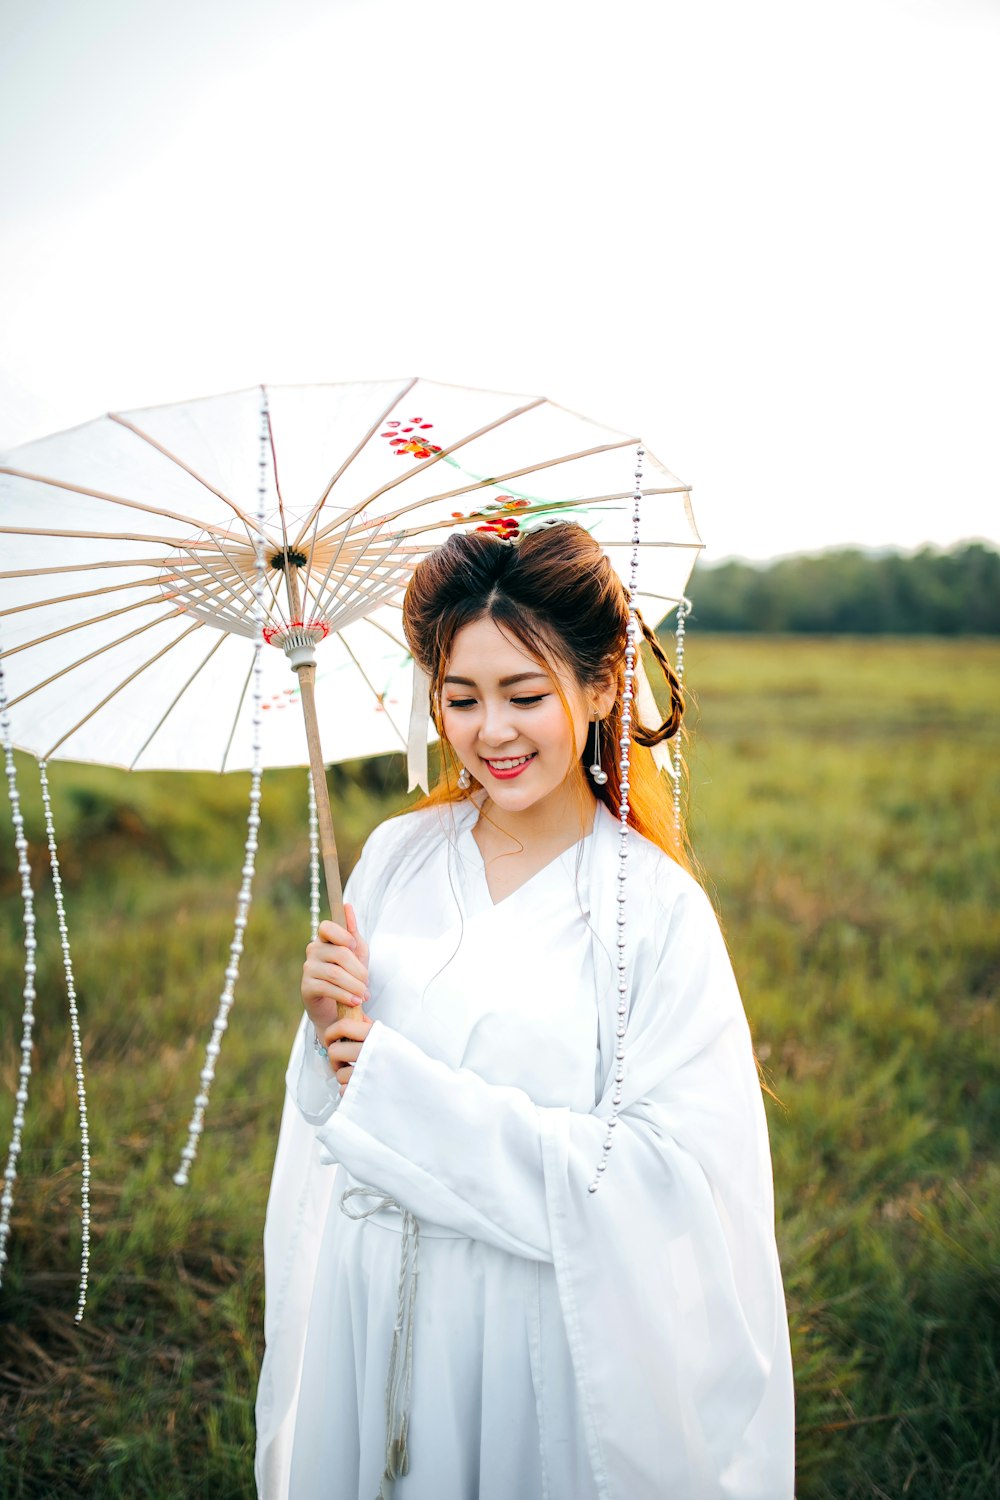 흰 기모노 드레스를 입고 흰 우산을 들고 있는 여자